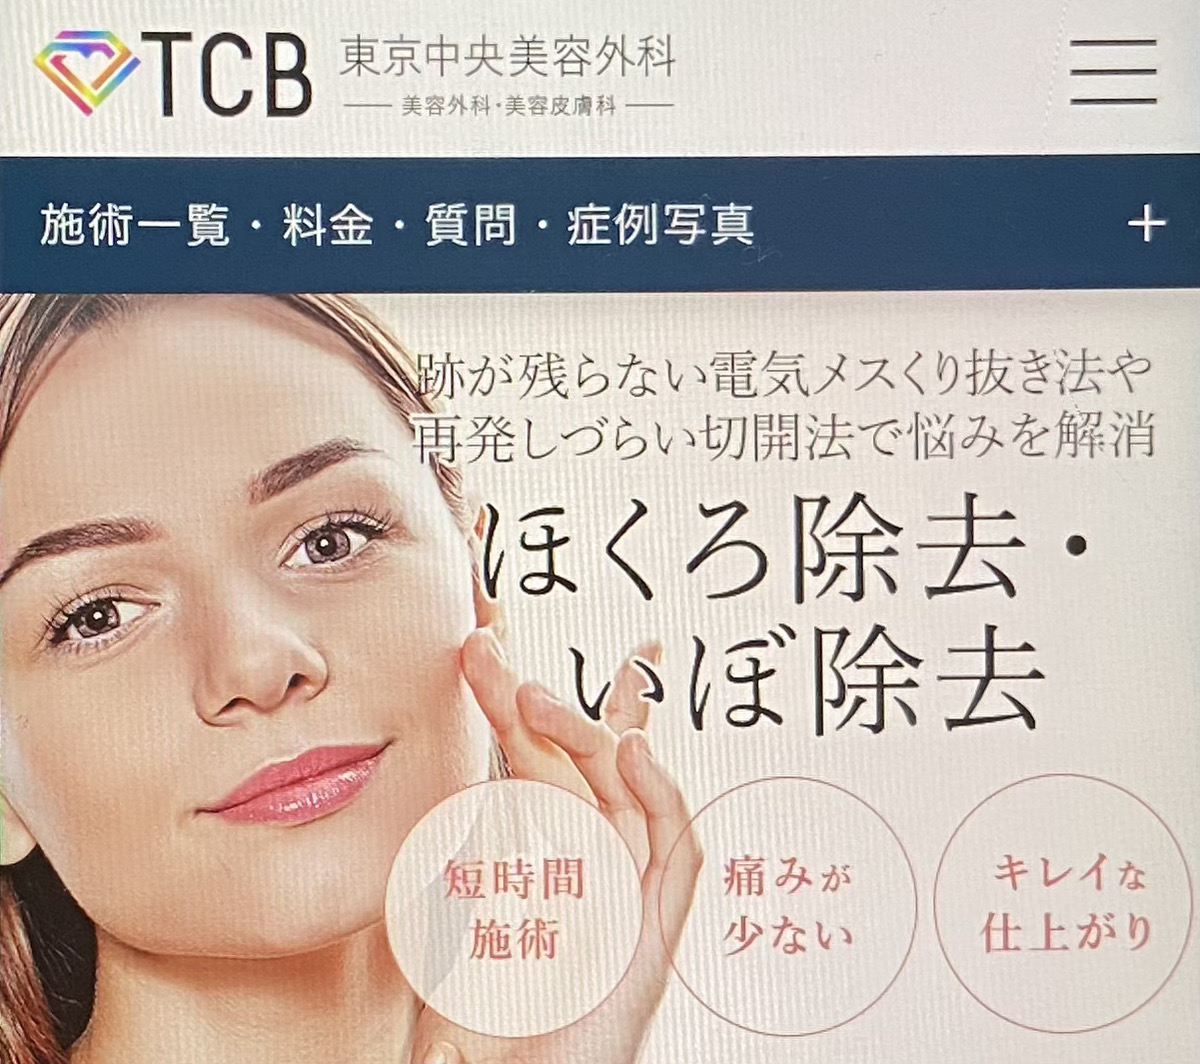 【駅前院・大通院】くり抜き法によるほくろ除去が受けられるTCB東京中央美容外科